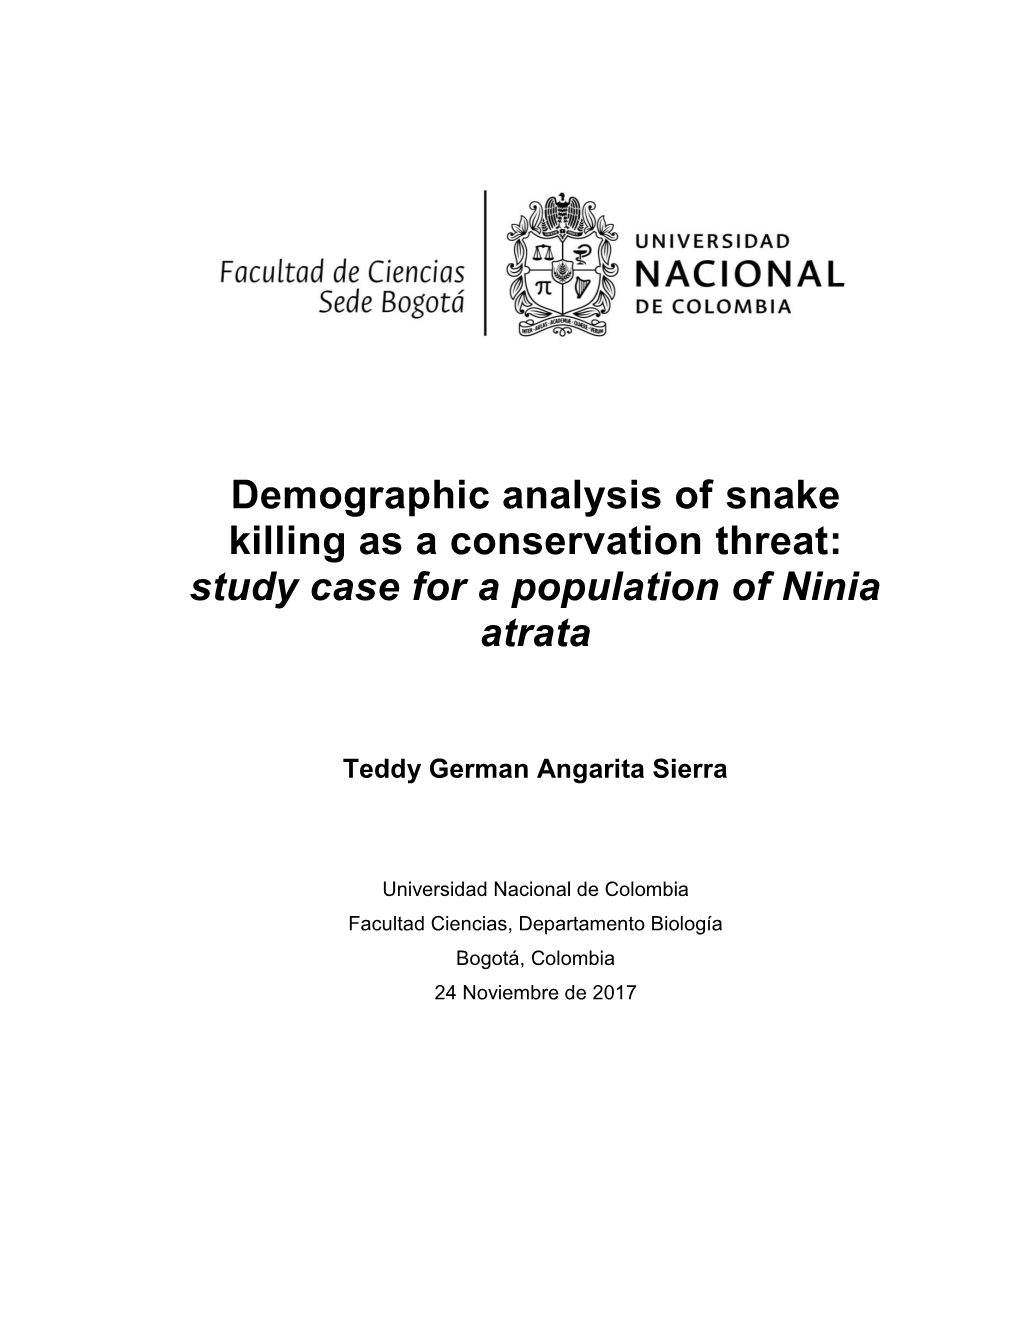 Study Case for a Population of Ninia Atrata